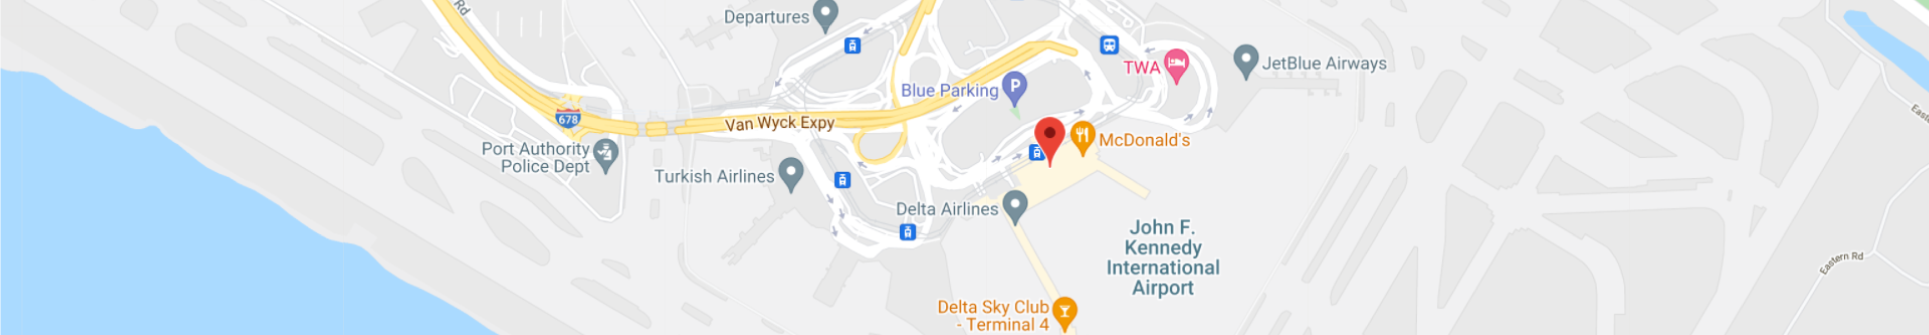 John F Kennedy International Airport Terminal 4  header-map